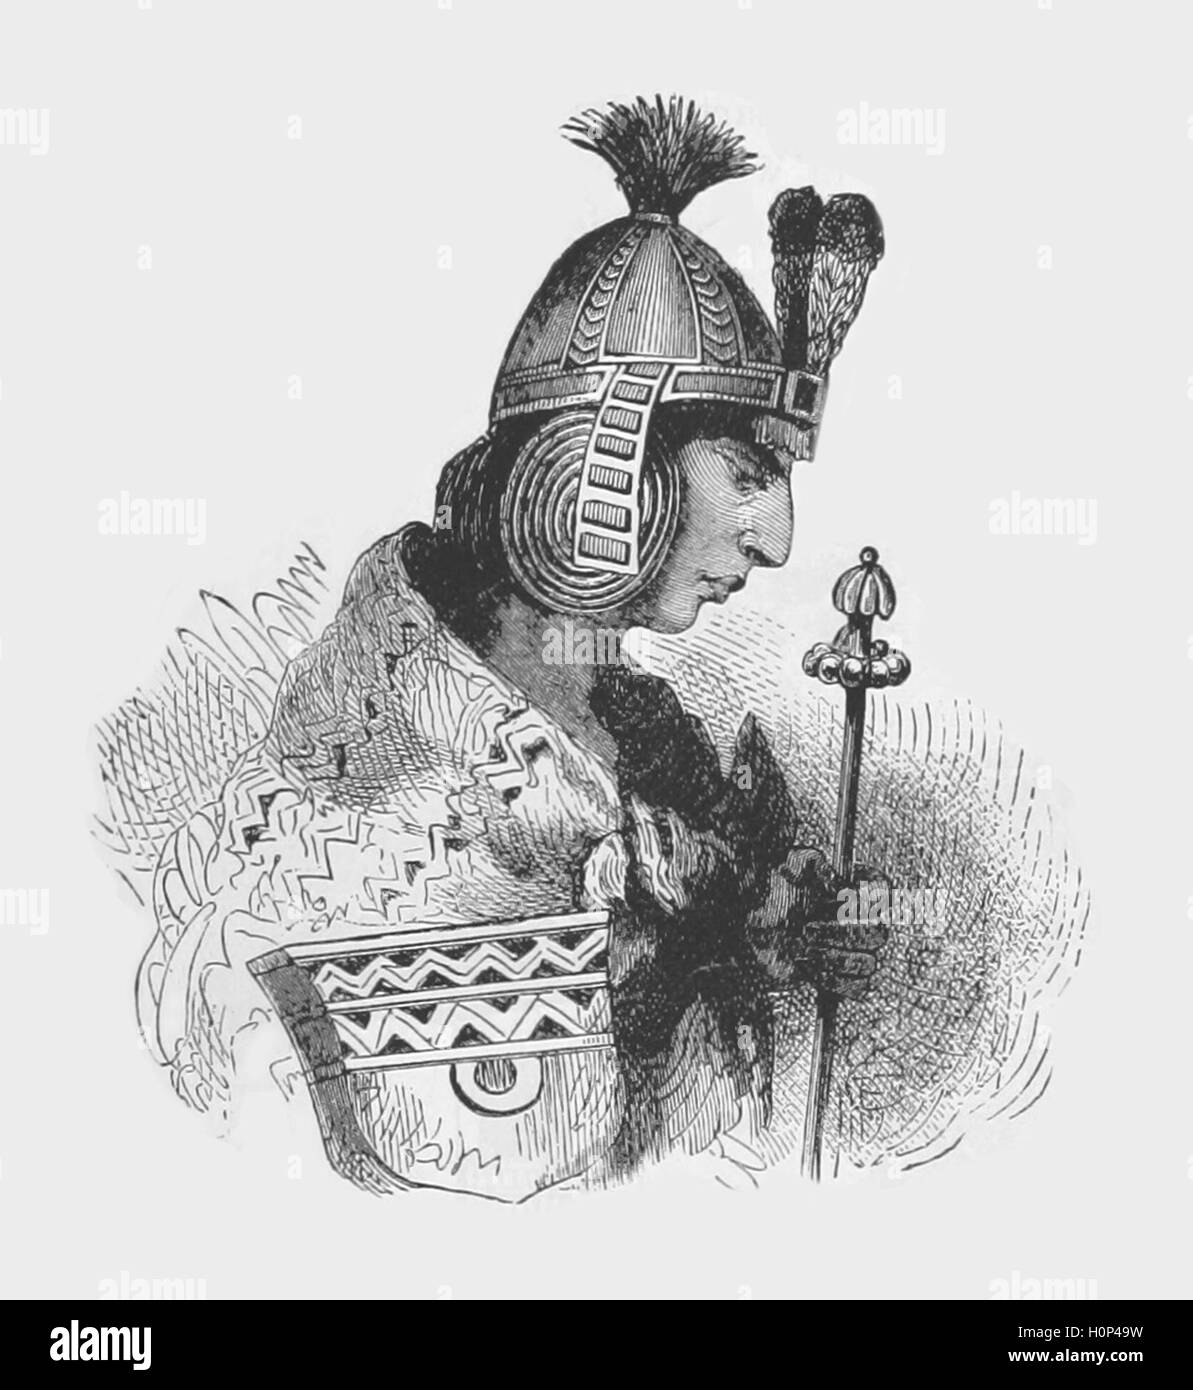 Le 13ème empereur Inca Huascar Huascar le 13ème empereur Inca Inka Waskar, de sens incertain, a déclaré que d'être liés à sa maison natale Huascarpata ; 1503-1532) a été Sapa Inca de l'Empire Inca de 1527 à 1532 AD, succédant à son père Huayna Capac et frère Ninan Cuyochi, qui tous deux sont morts de la variole alors qu'il faisait campagne près de Quito de droit provenant de Cassell's Illustrated l'histoire universelle (1893). Banque D'Images